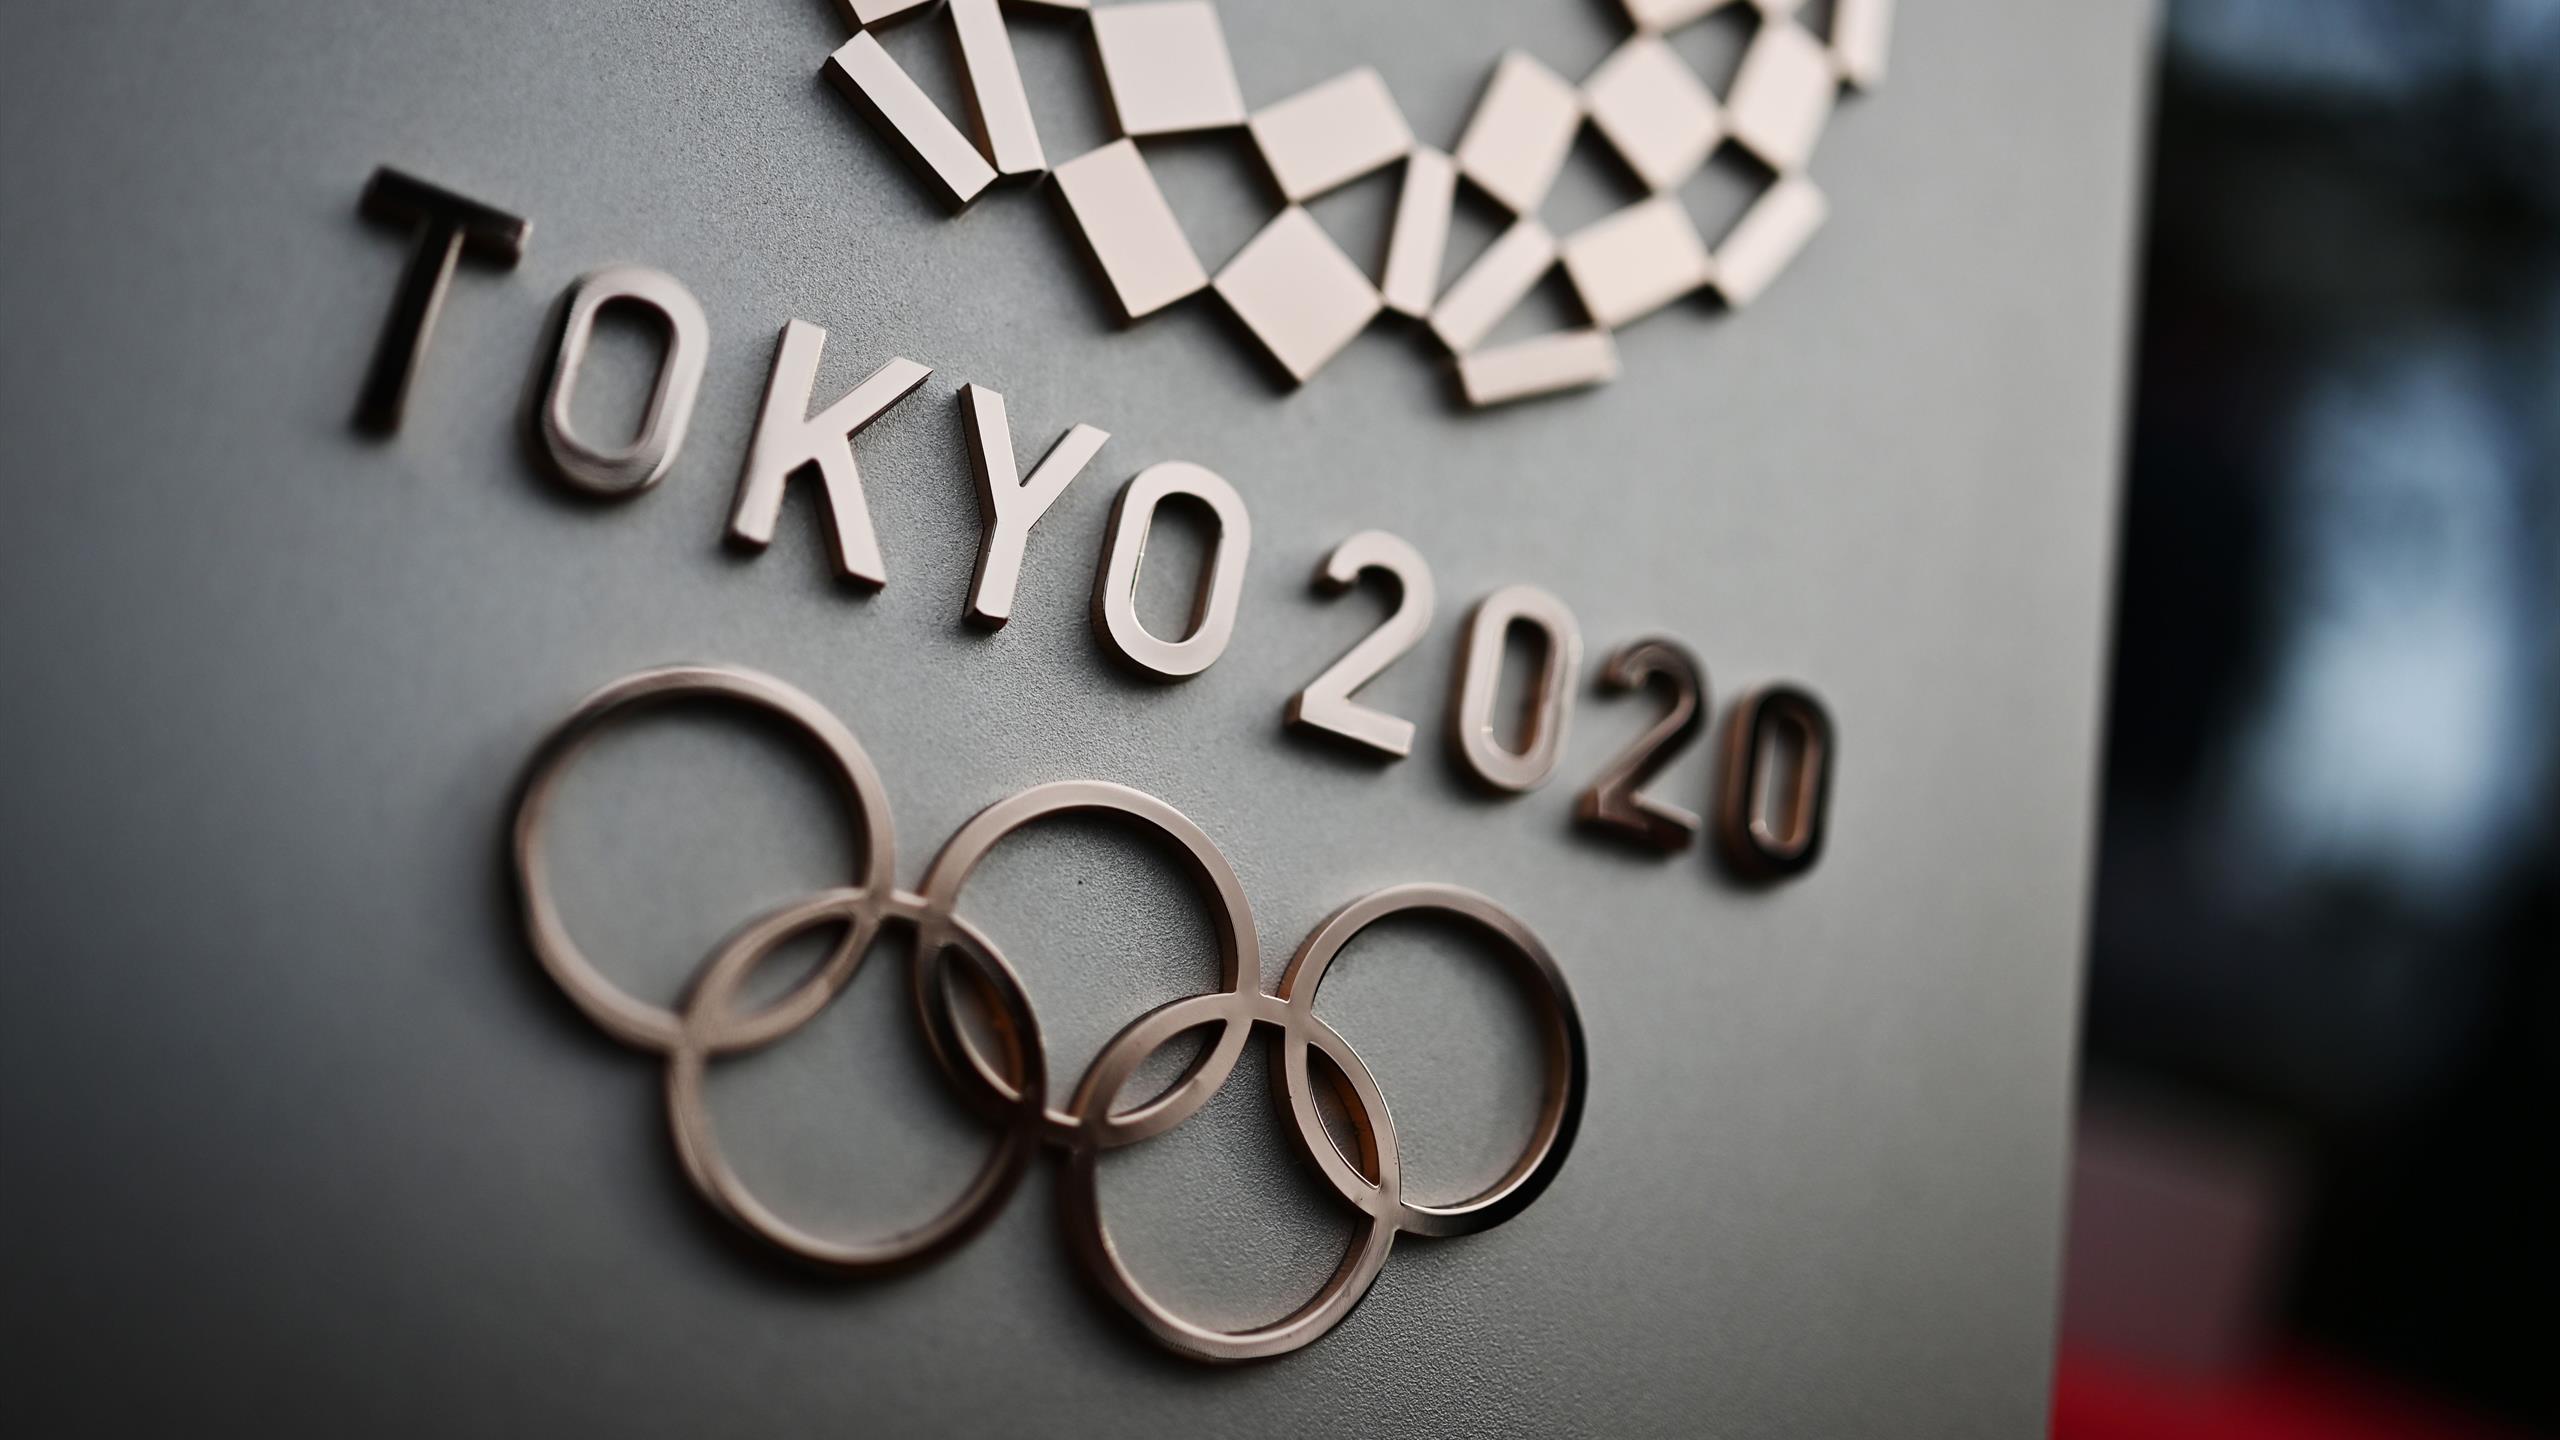 Токио-2020 Халықаралық Олимпиада ойындарының жаңа ұраны бекітілді